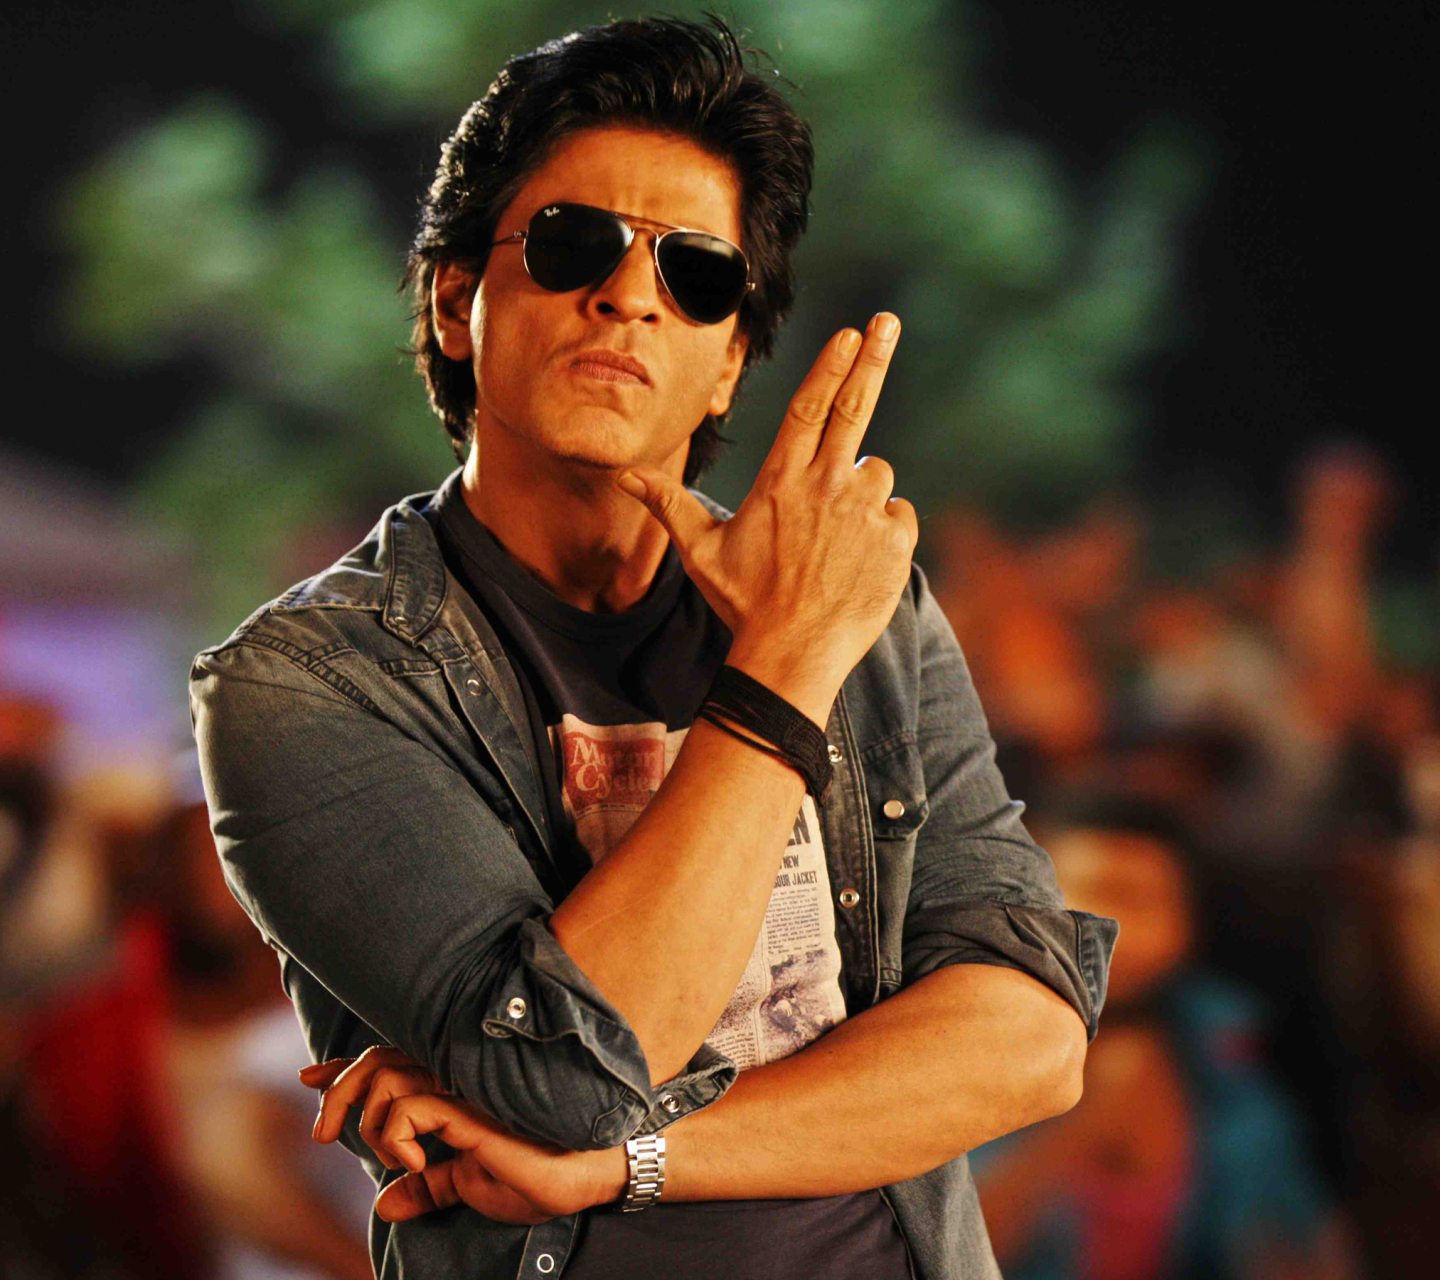 Descarga gratuita de fondo de pantalla para móvil de Celebridades, Actor, Bollywood, Sahrukh Khan.